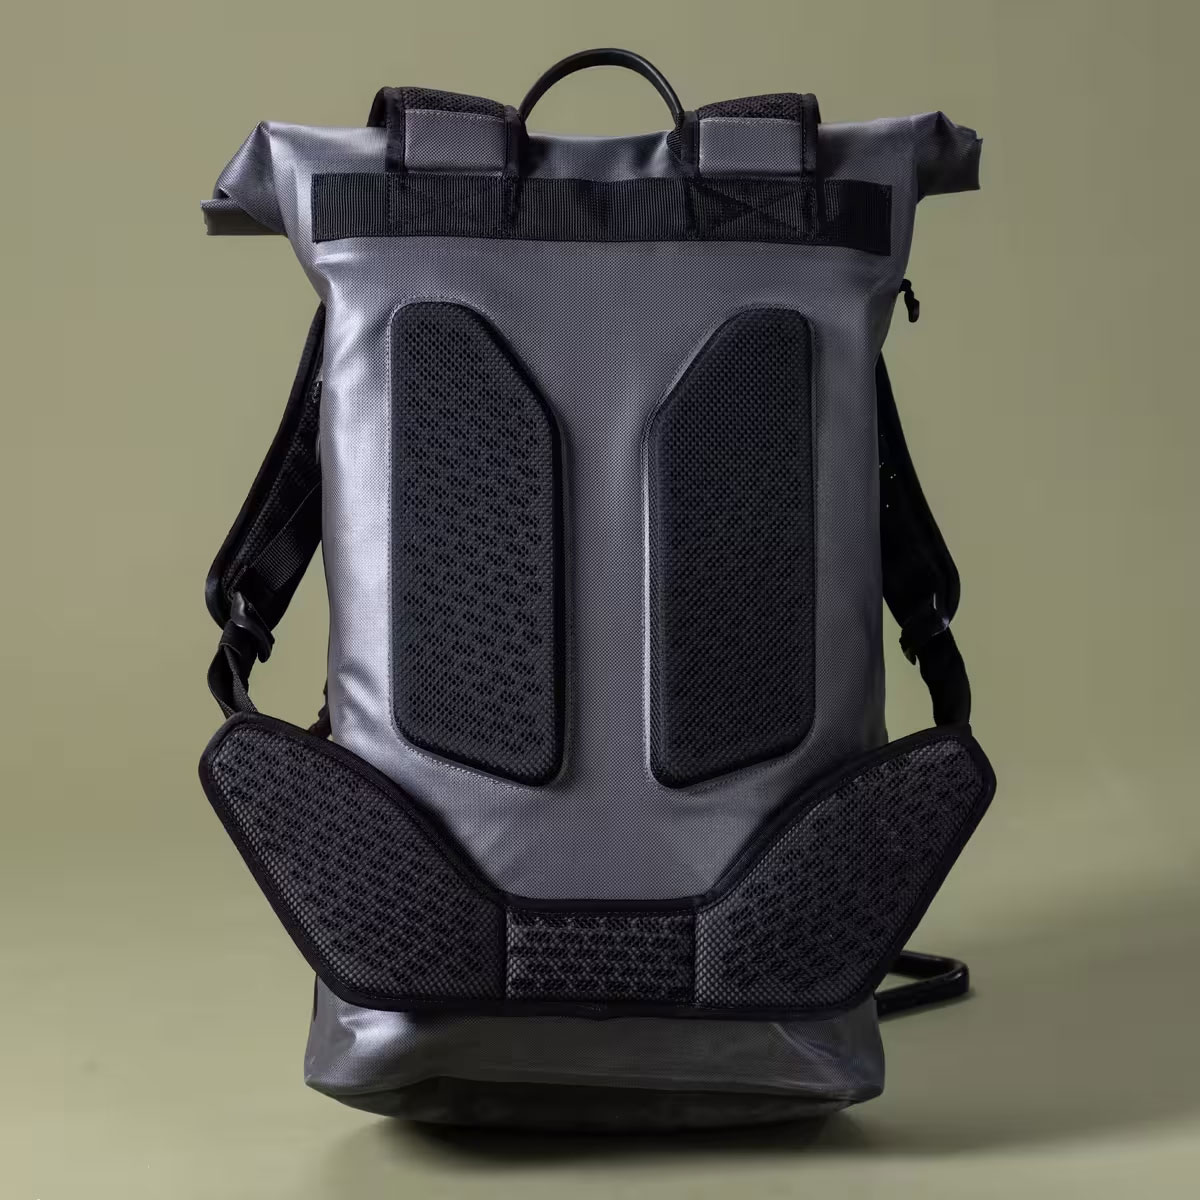 Elops Speed 520, una mochila de gran capacidad completamente impermeable para salir de viaje con la bicicleta